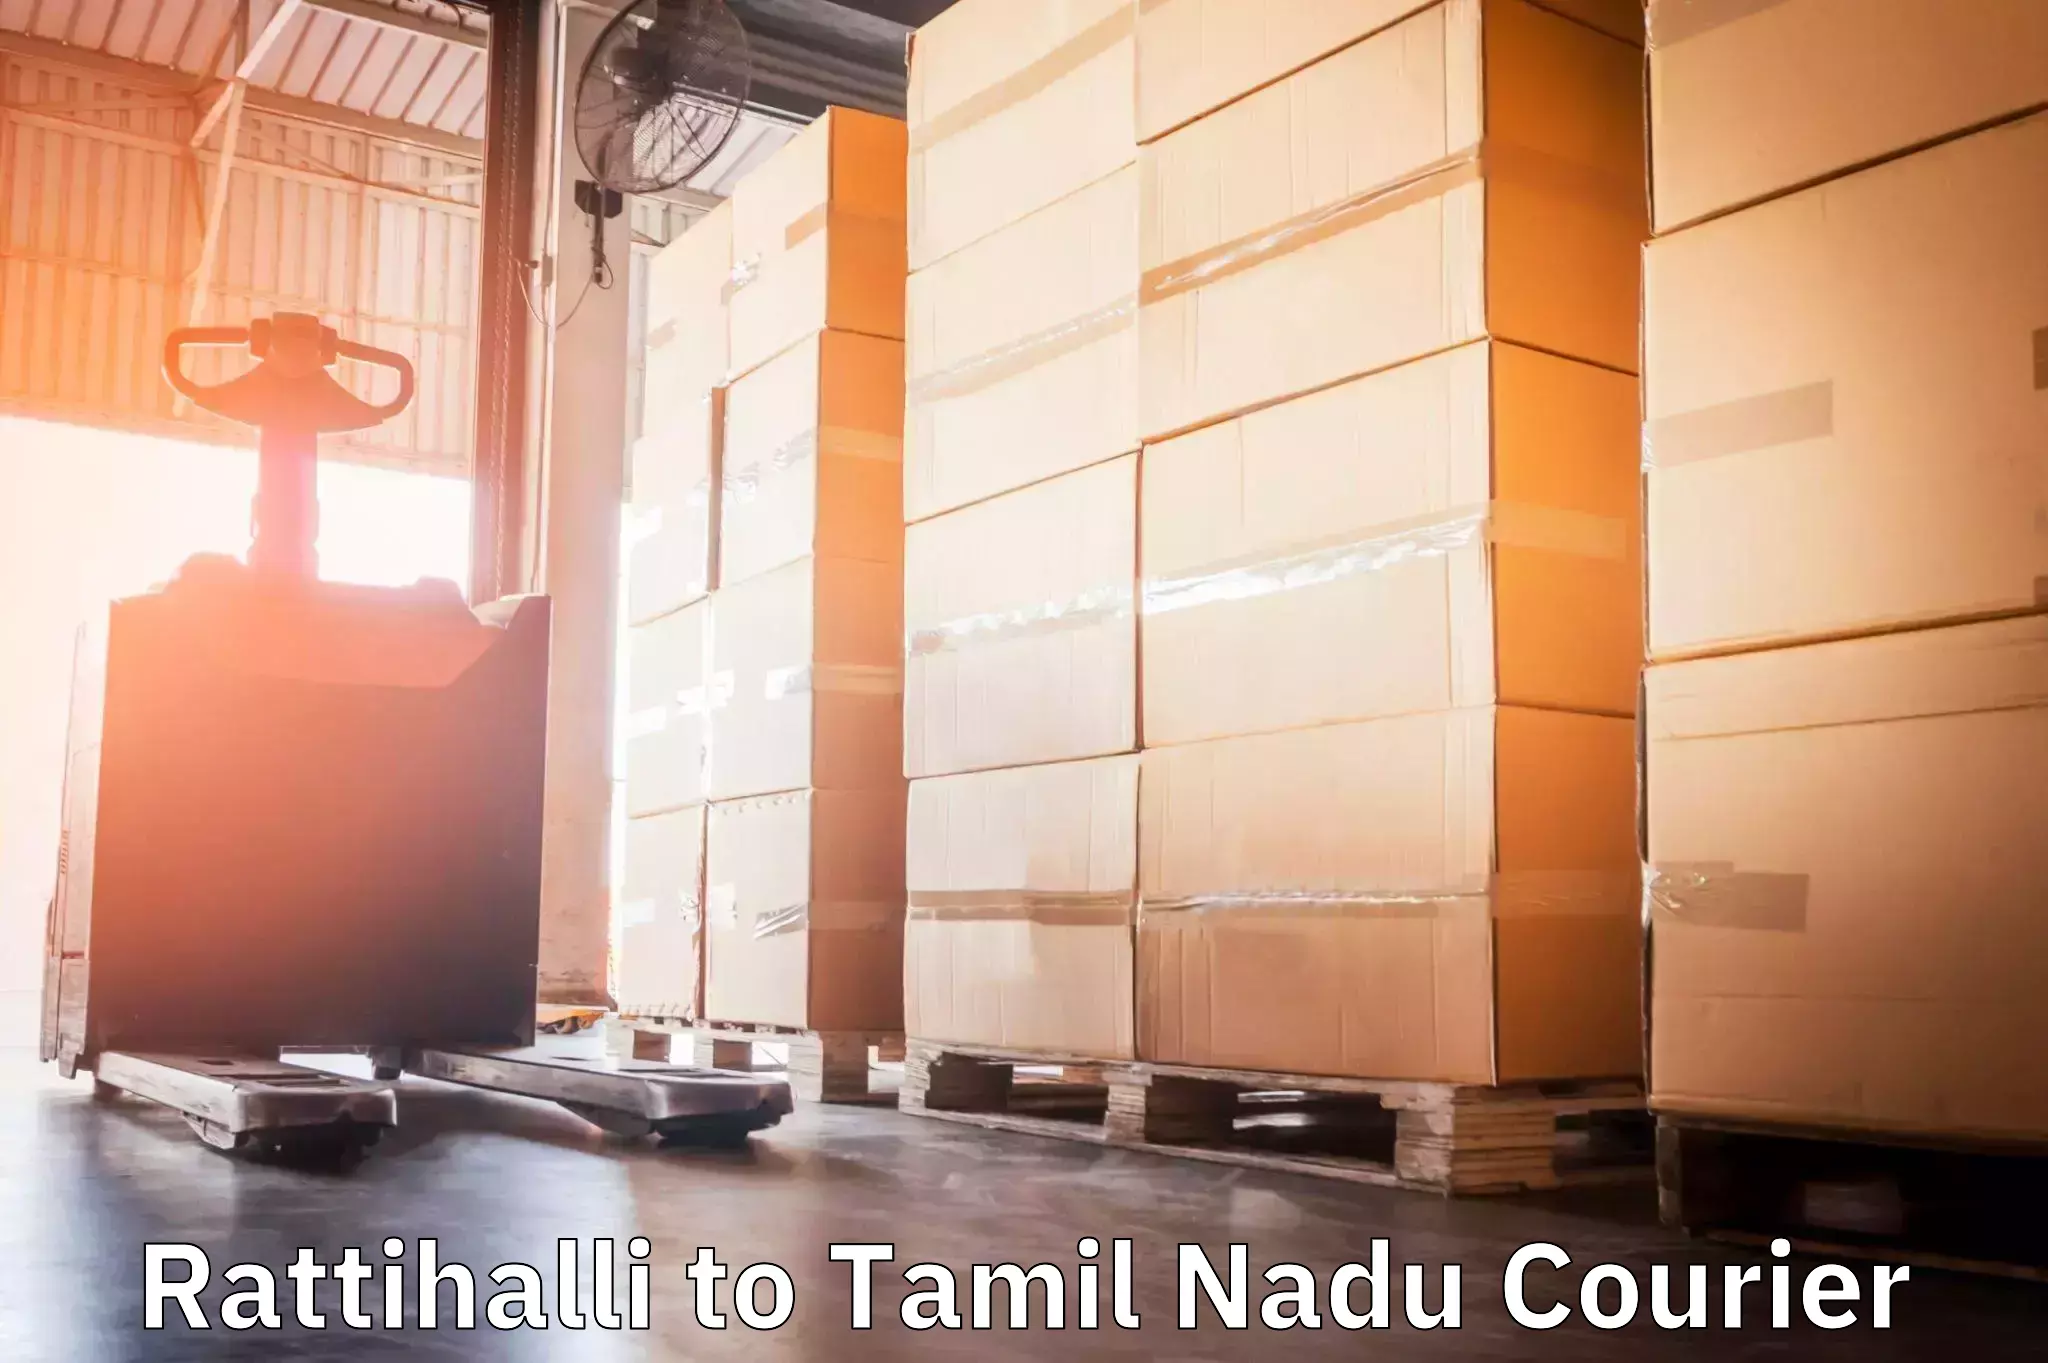 International logistics solutions Rattihalli to Tamil Nadu